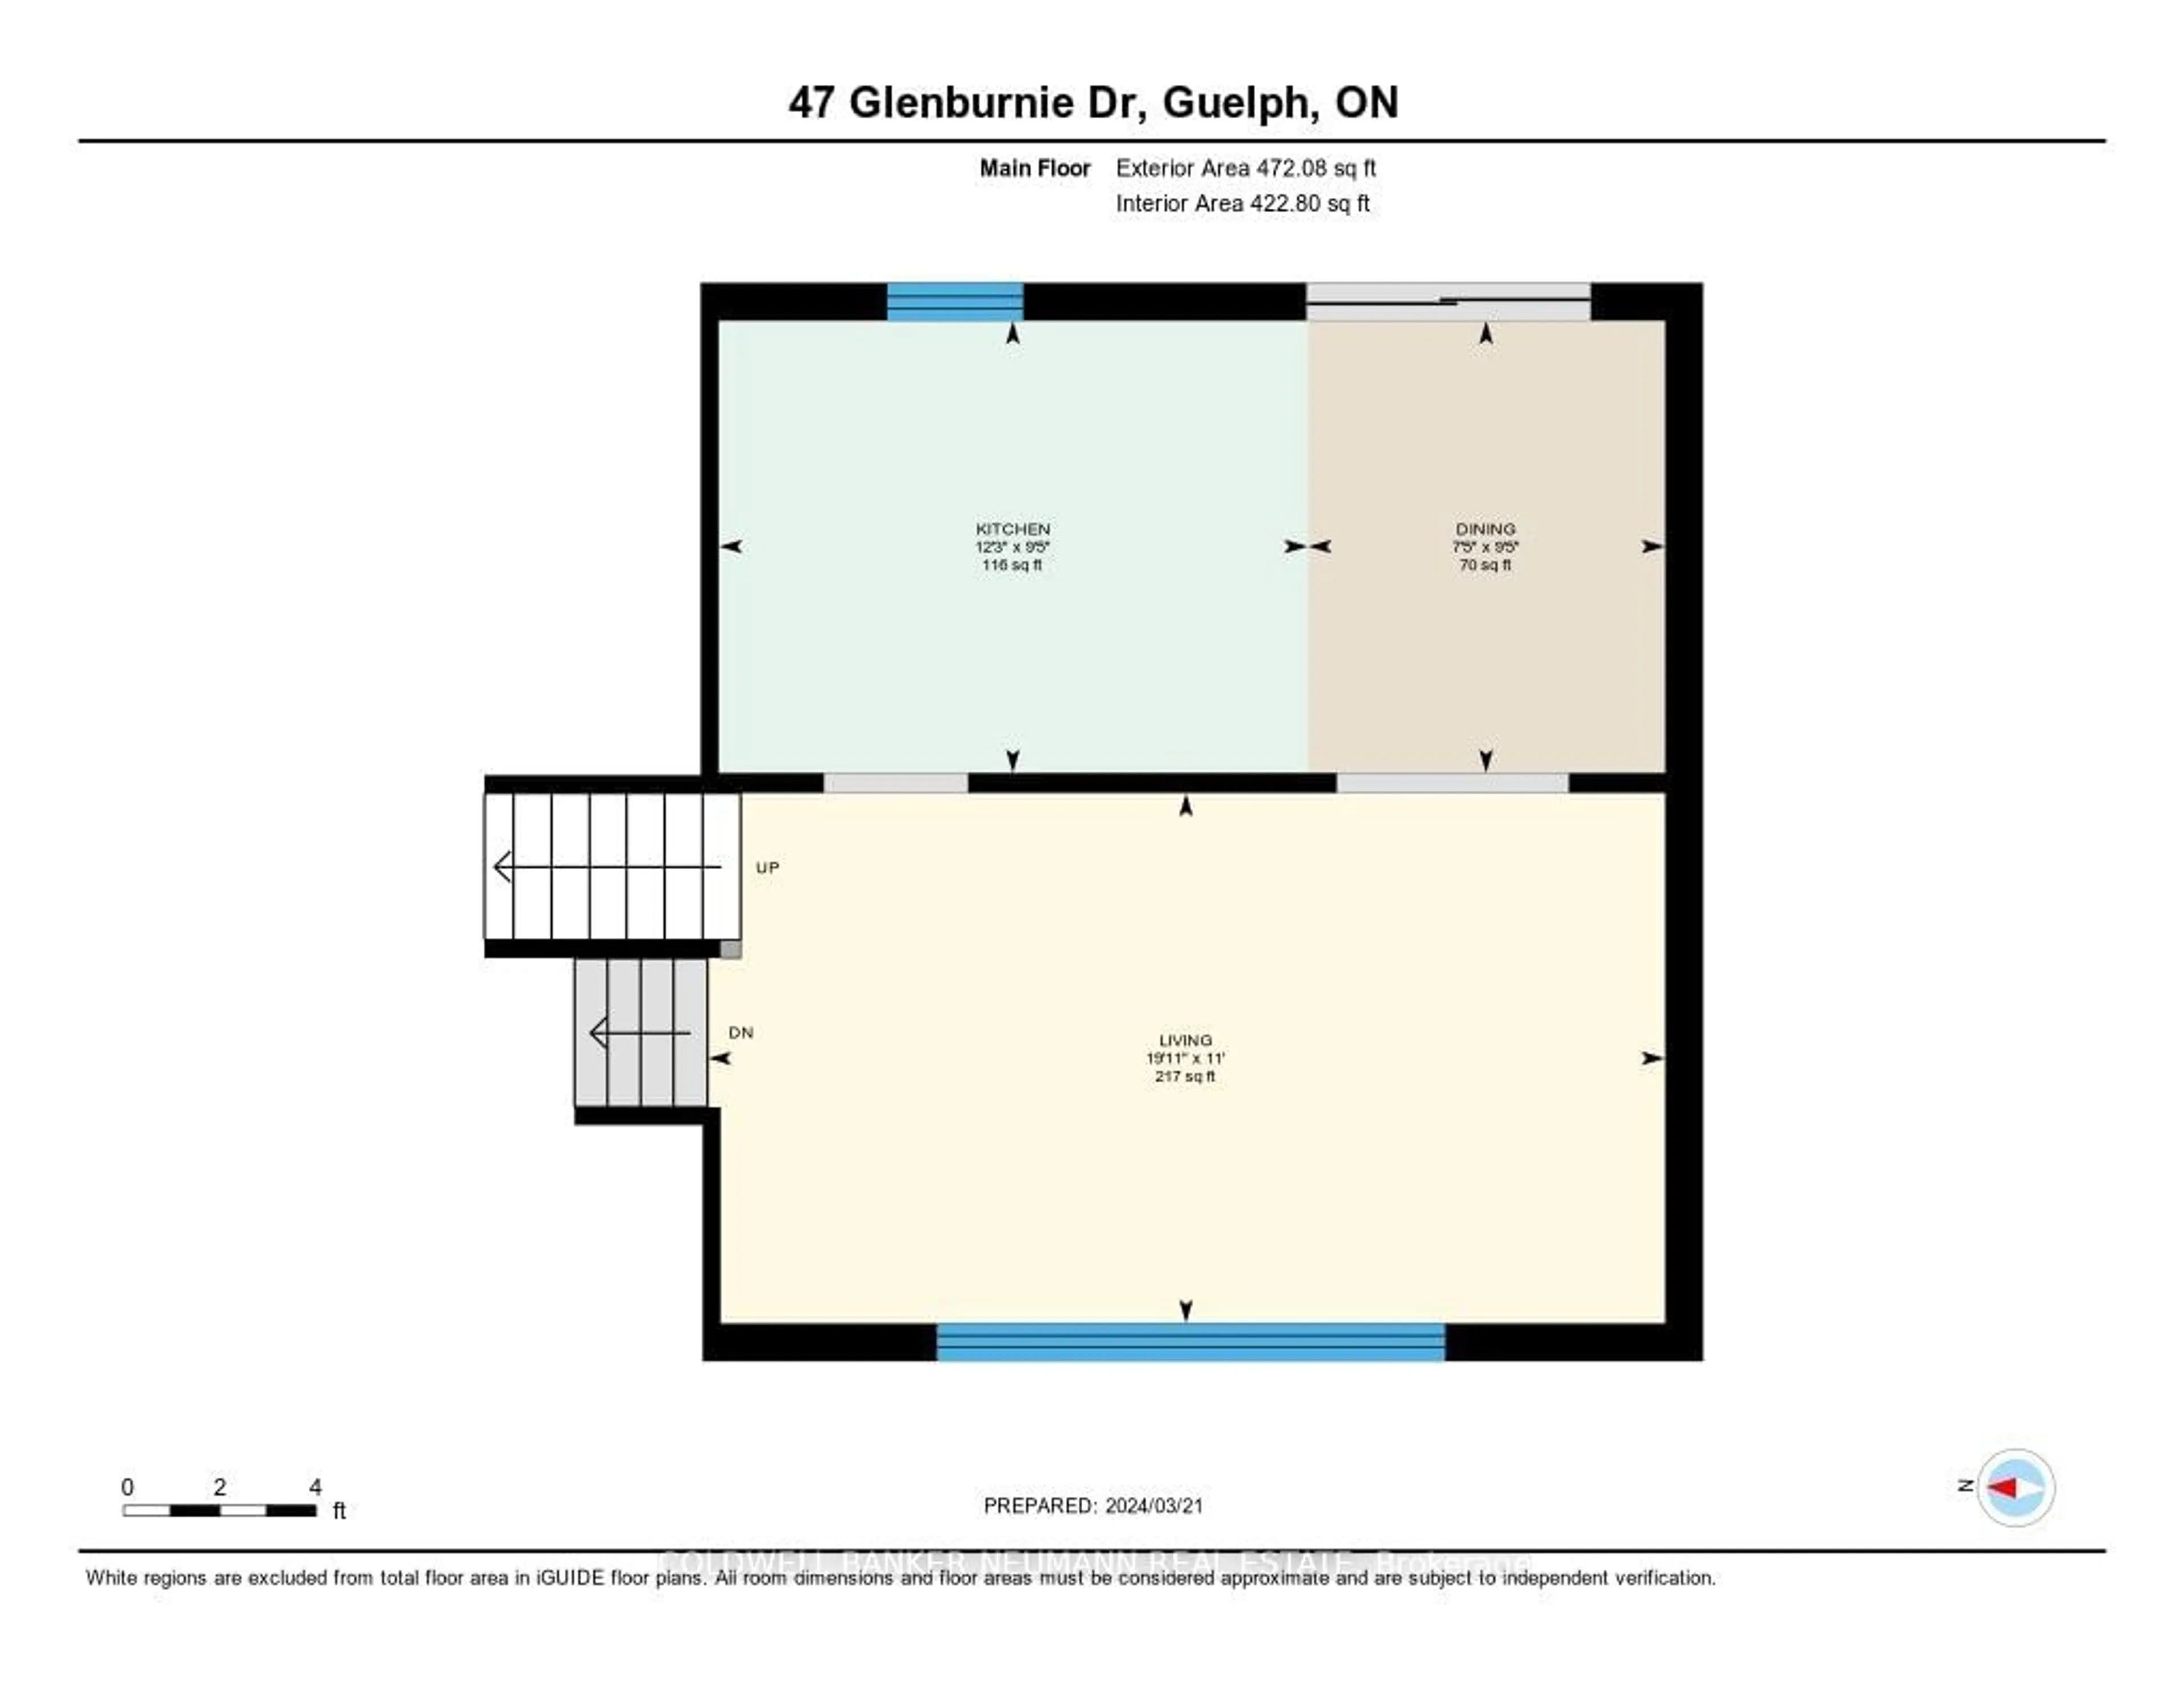 Floor plan for 47 Glenburnie Dr, Guelph Ontario N1E 4C5